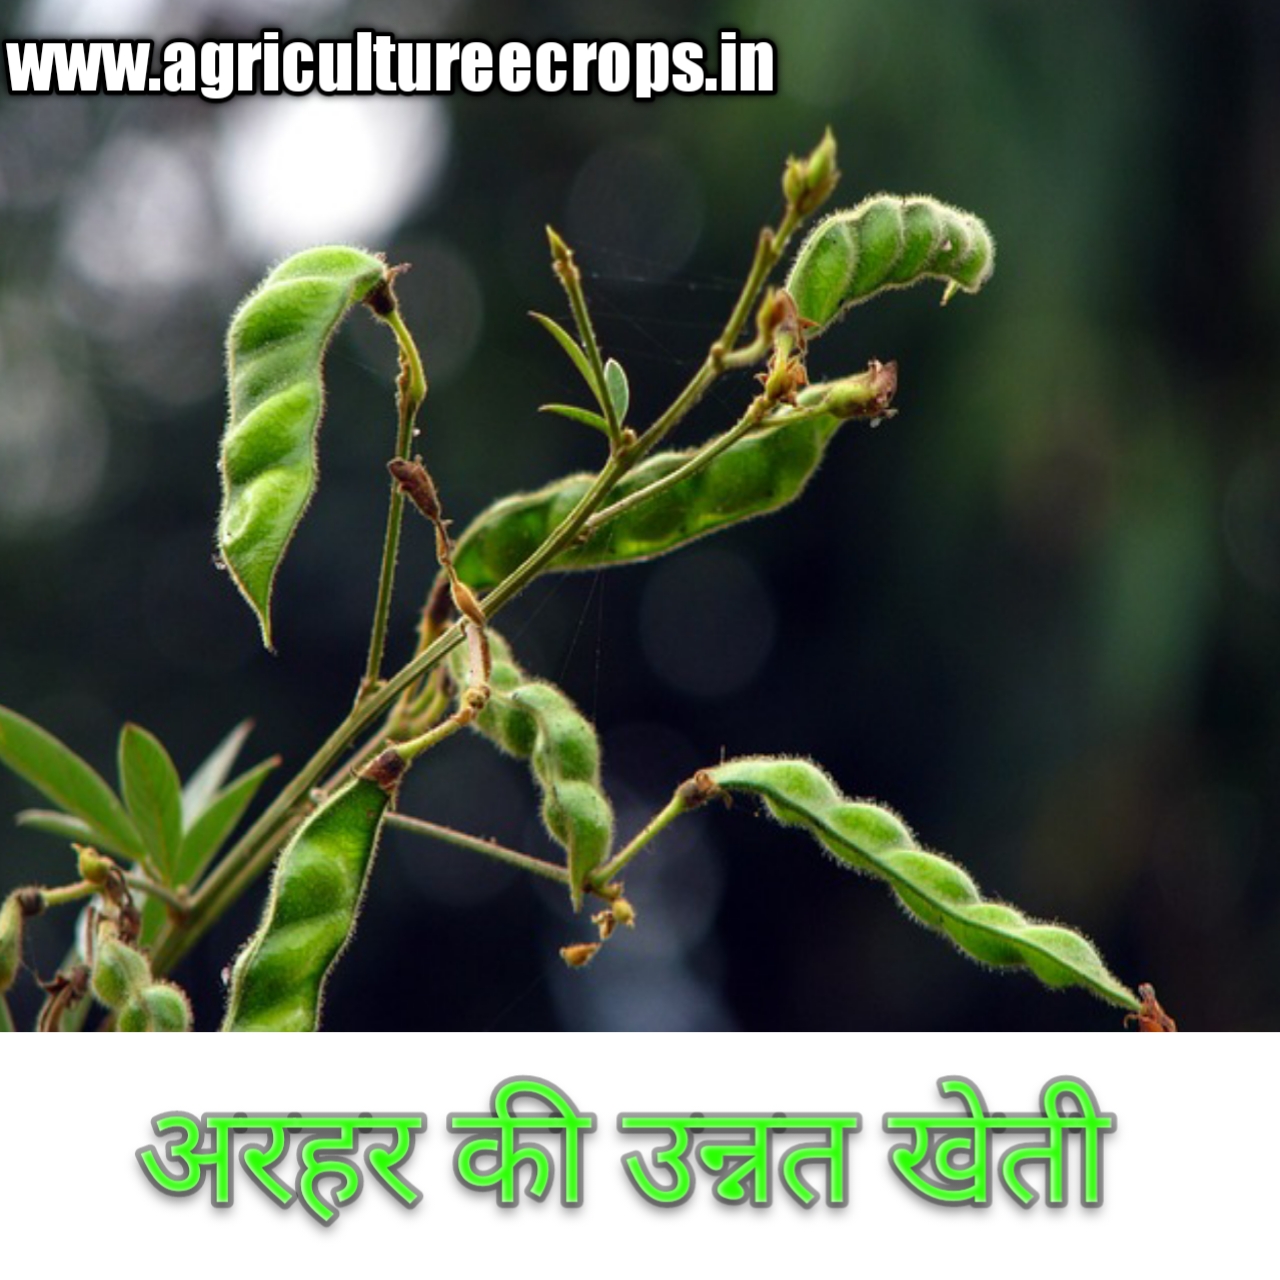 अधिक उत्पादन पाने के लिए तुर अथवा अरहर ( Redgram or pigeon pea in hindi ) की उन्नत खेती कैसे करें ?